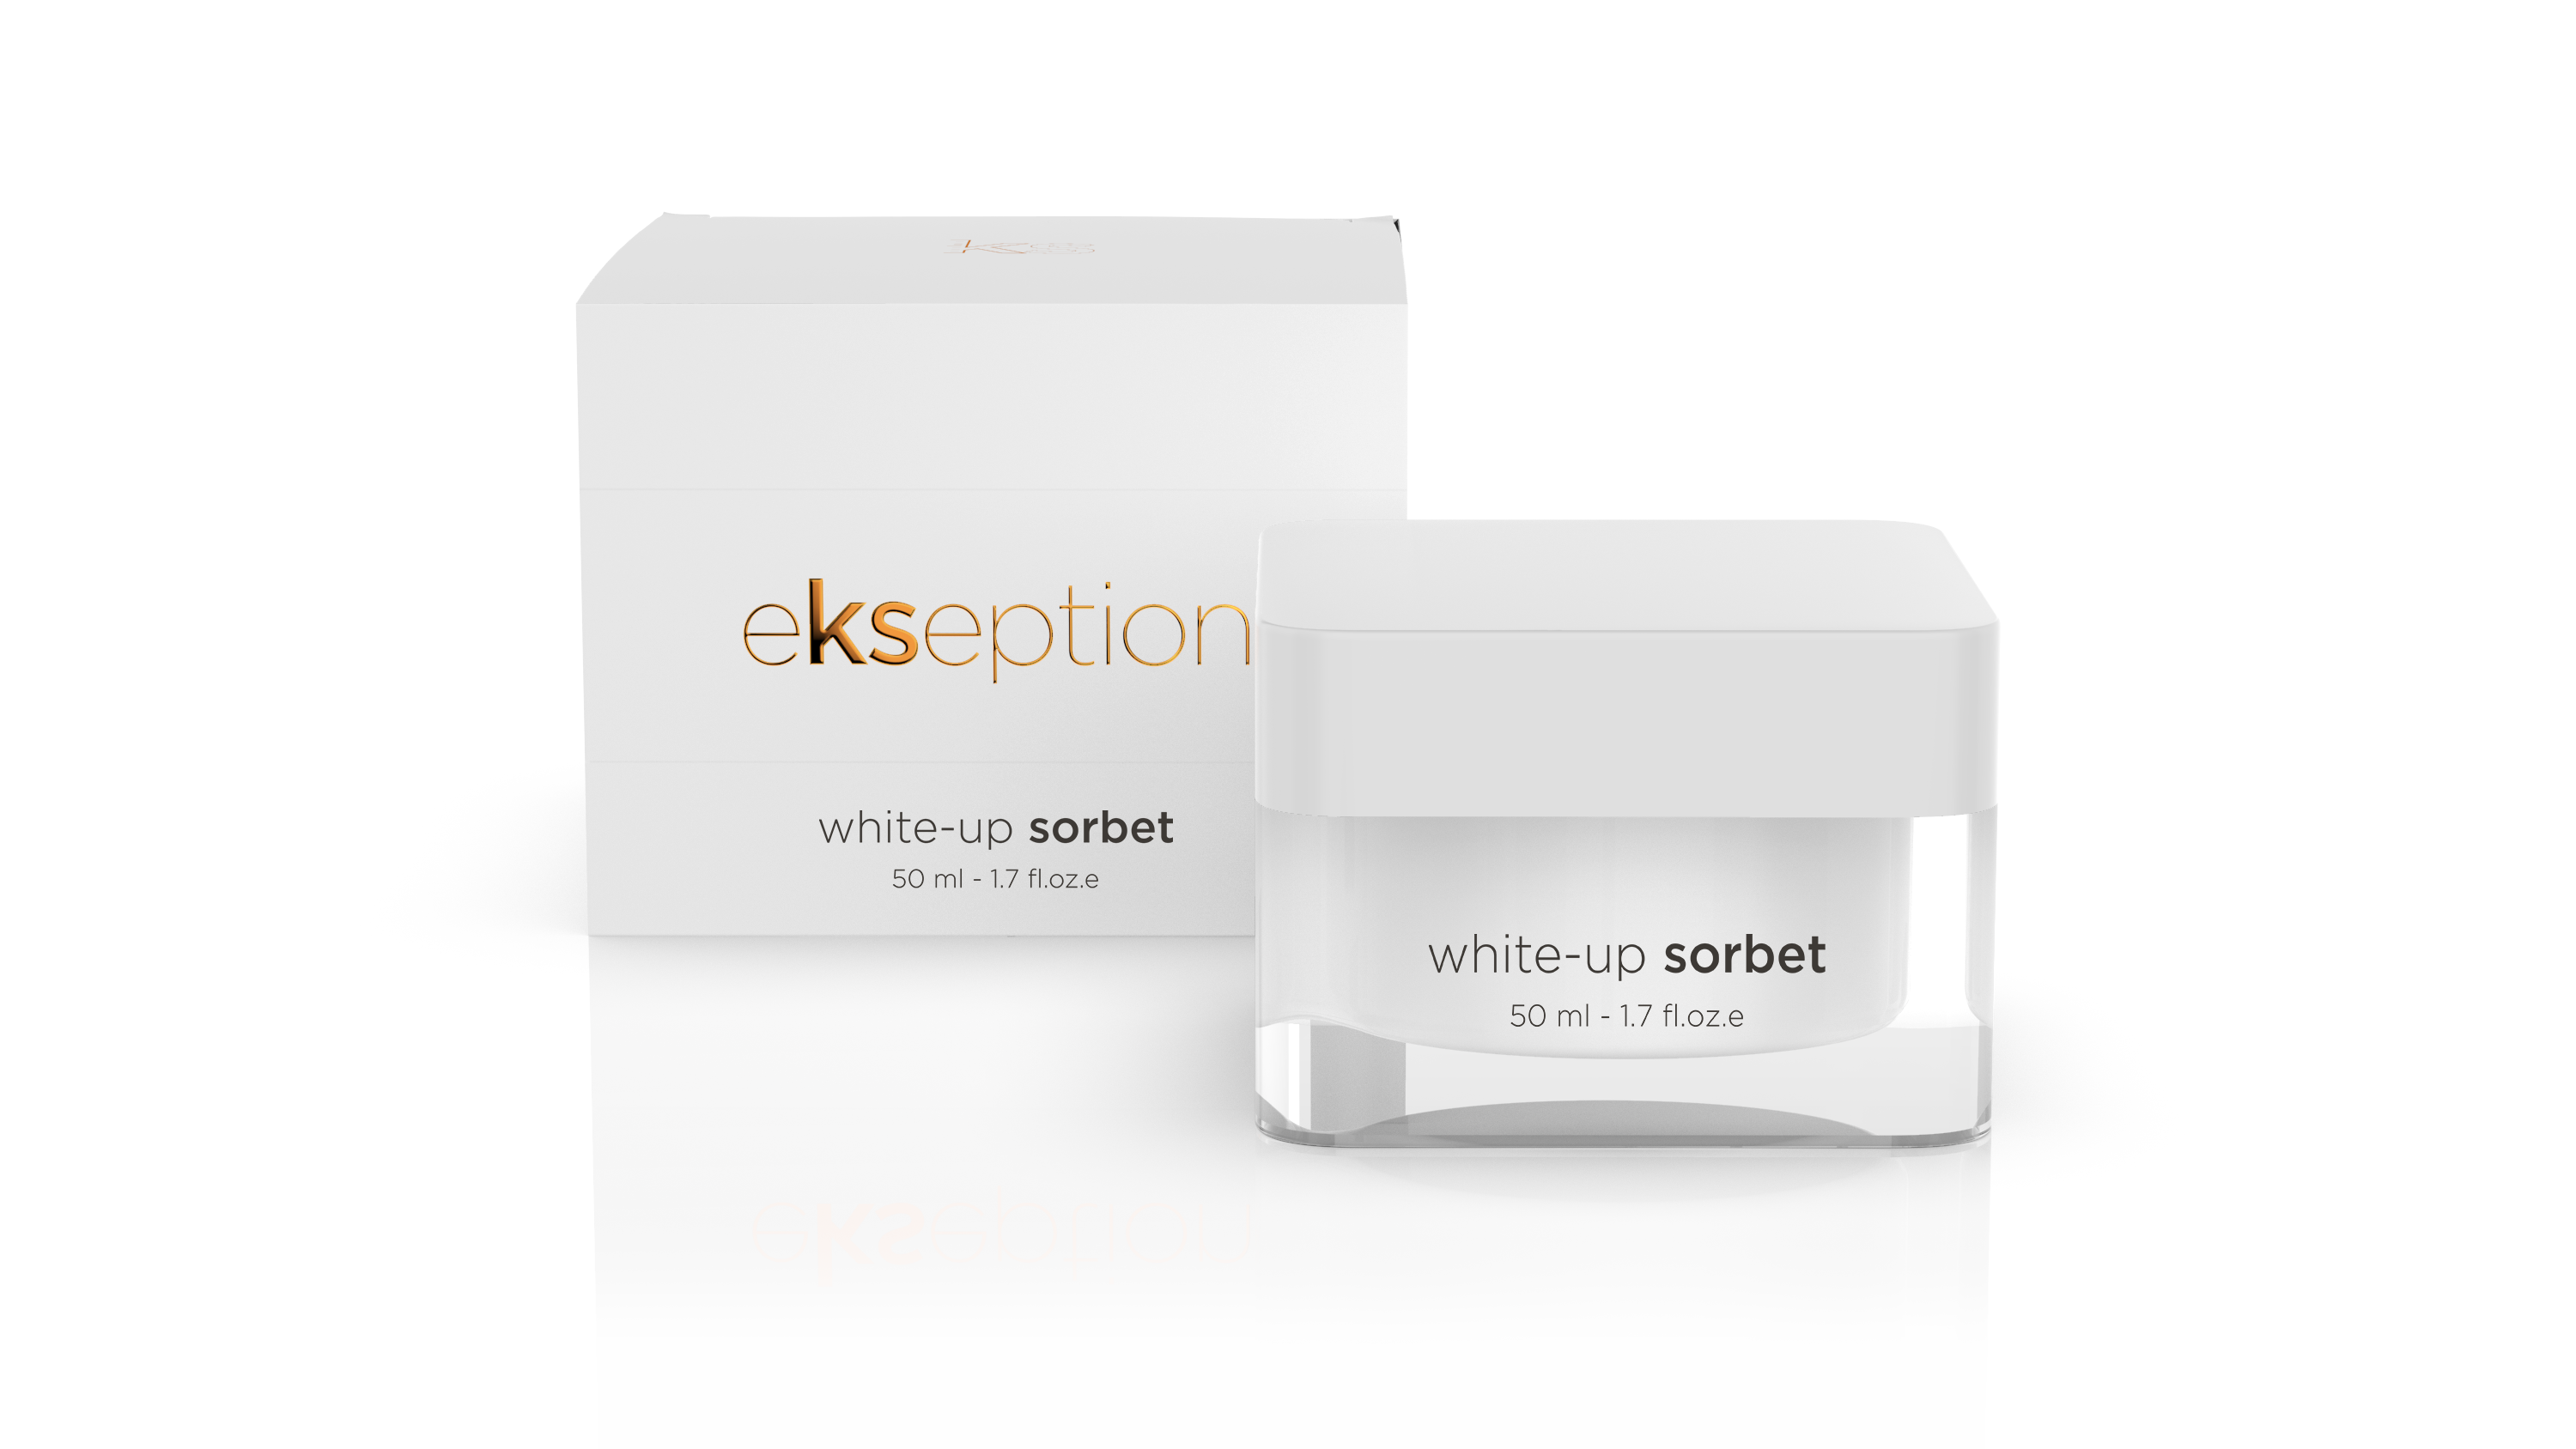 EKSEPTION WHITE-UP SORBET 50ML